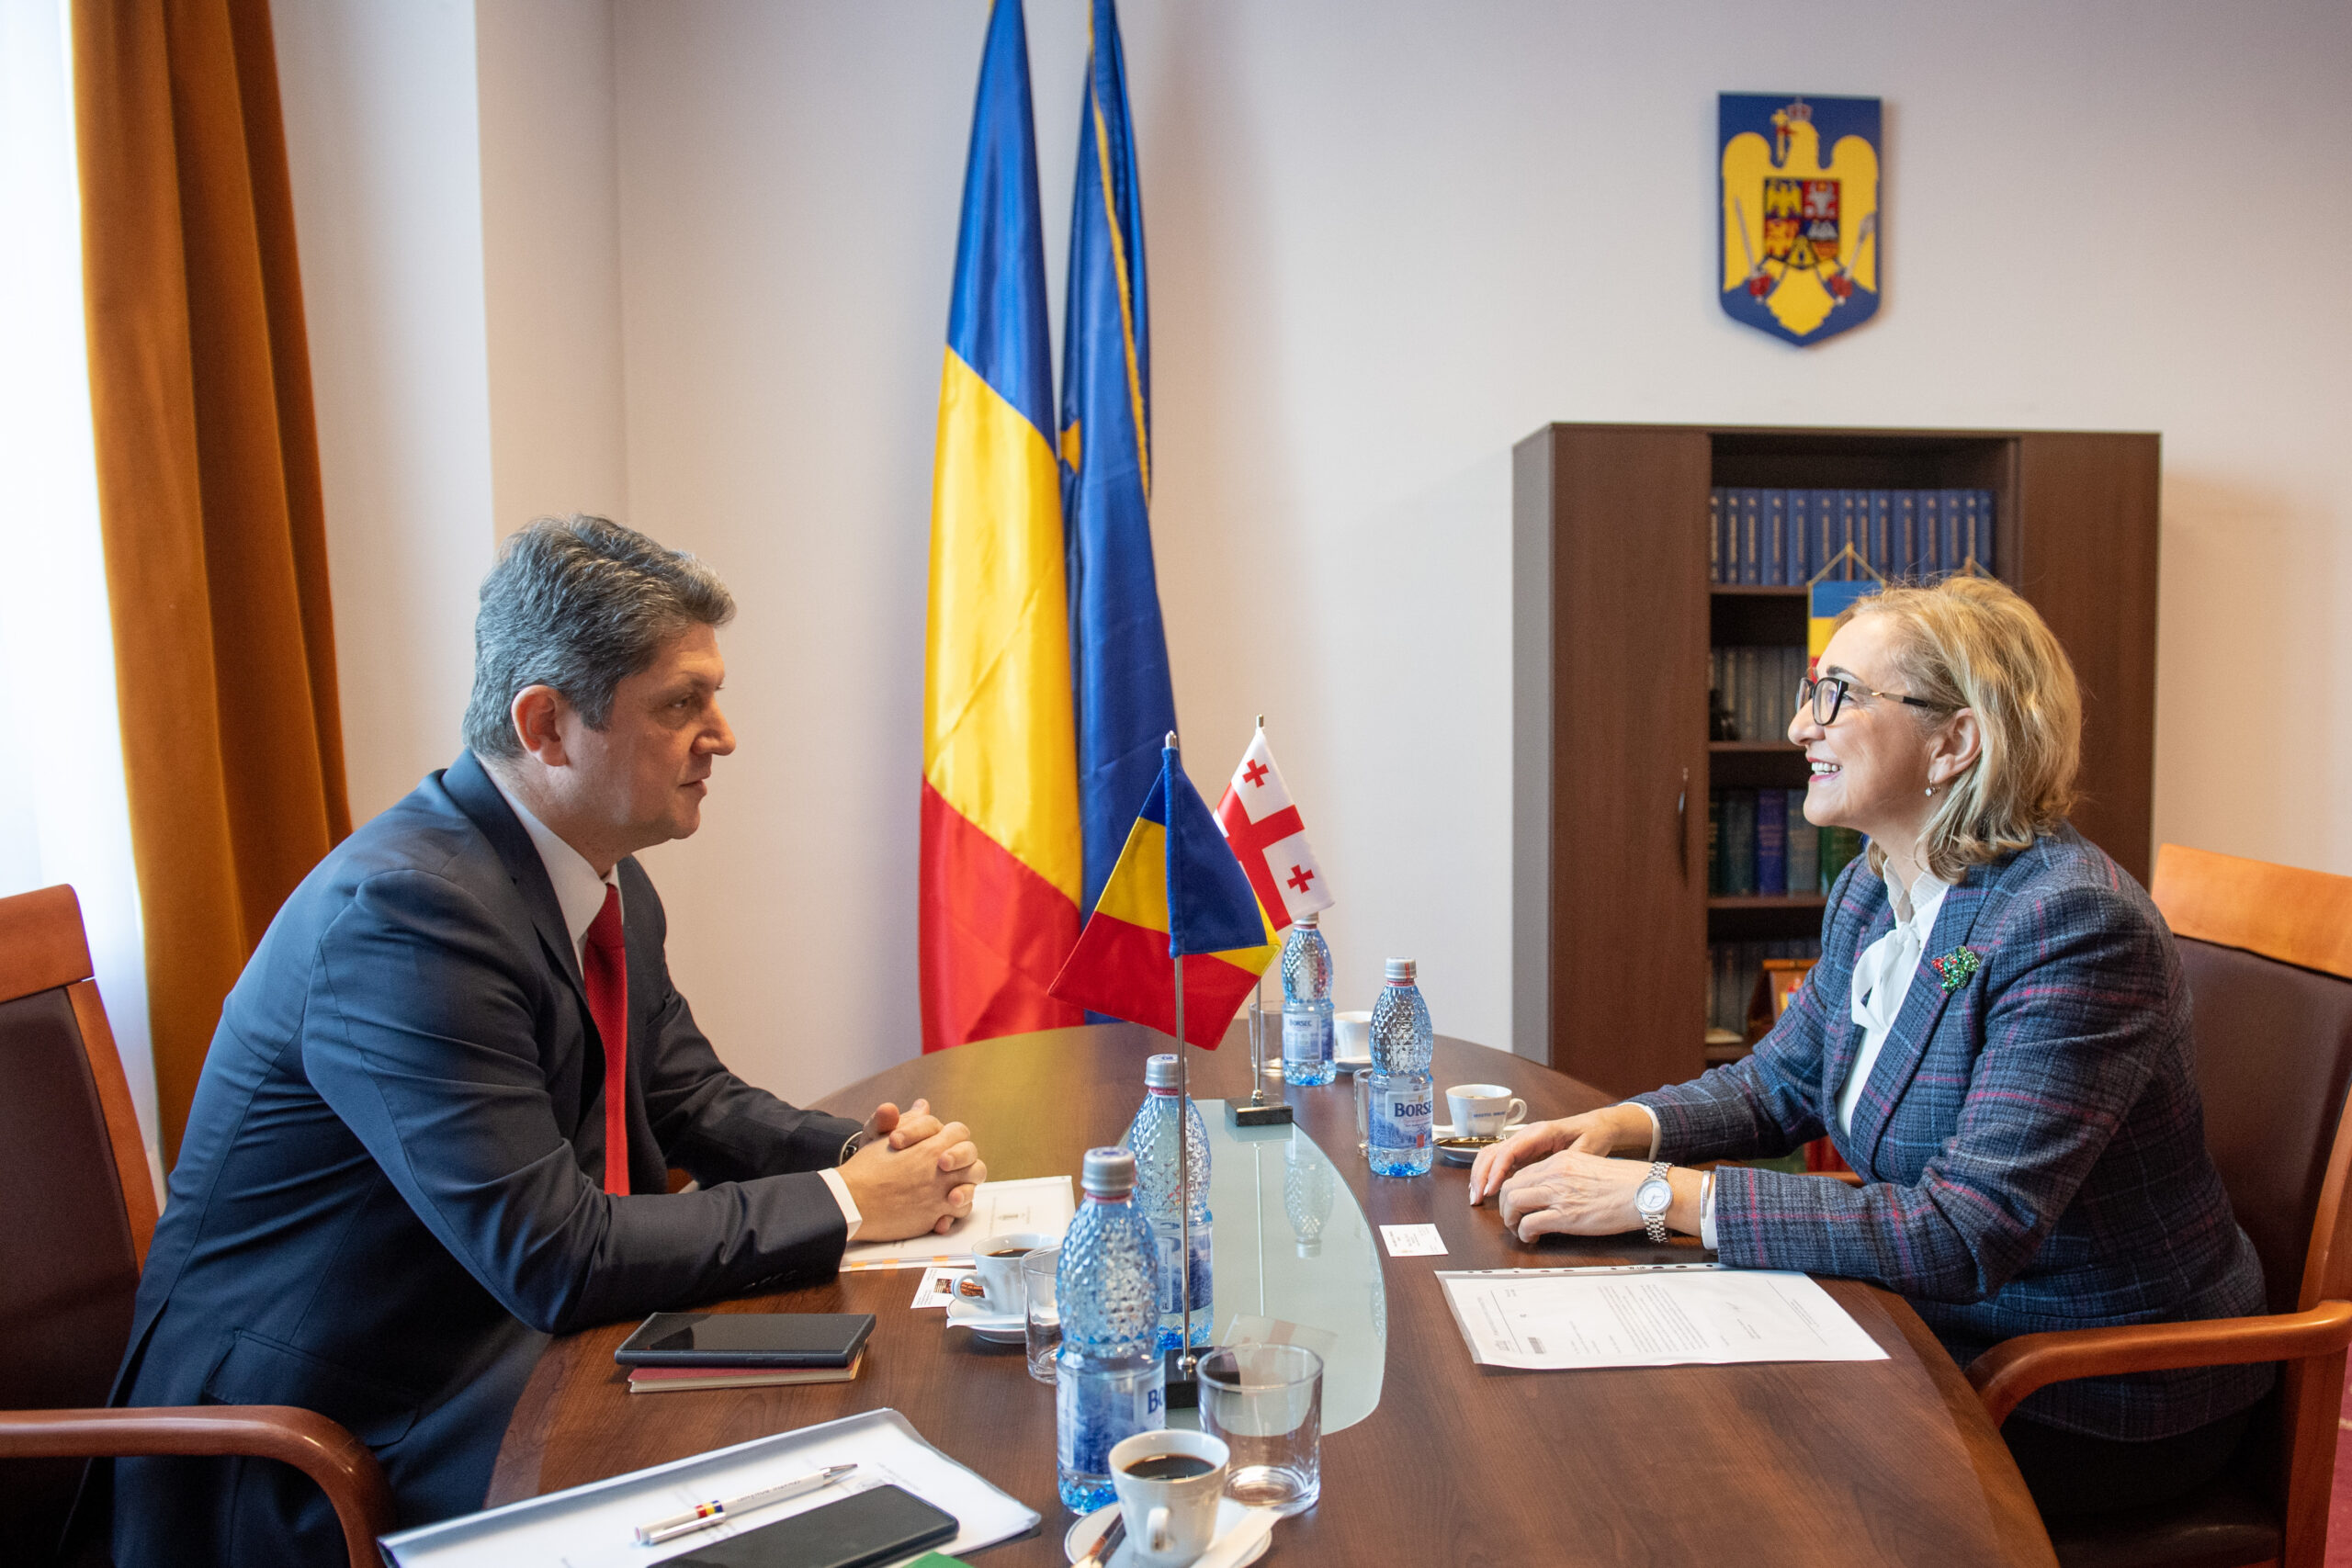 Senatorul Titus Corlățean, președintele Comisiei pentru politică externă, întrevedere cu E.S. Tamar Beruchashvili, ambasador al Georgiei în România. Temele întâlnirii: dezvoltarea relațiilor dintre cele două țări și susținerea obiectivelor europene și euro-atlantice ale Georgiei.